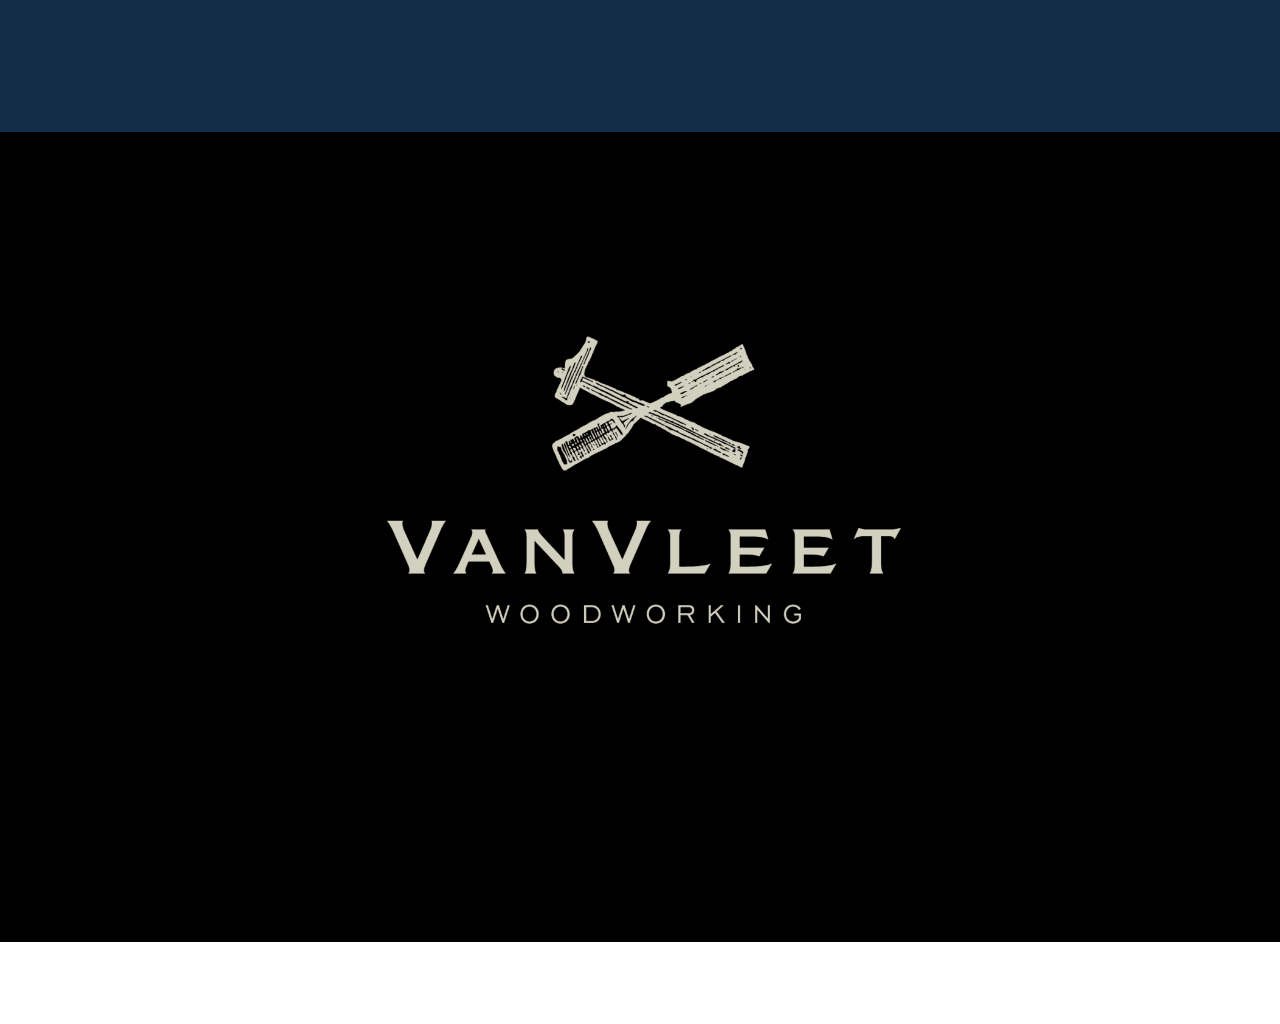 www.vanvleetwoodworking.com